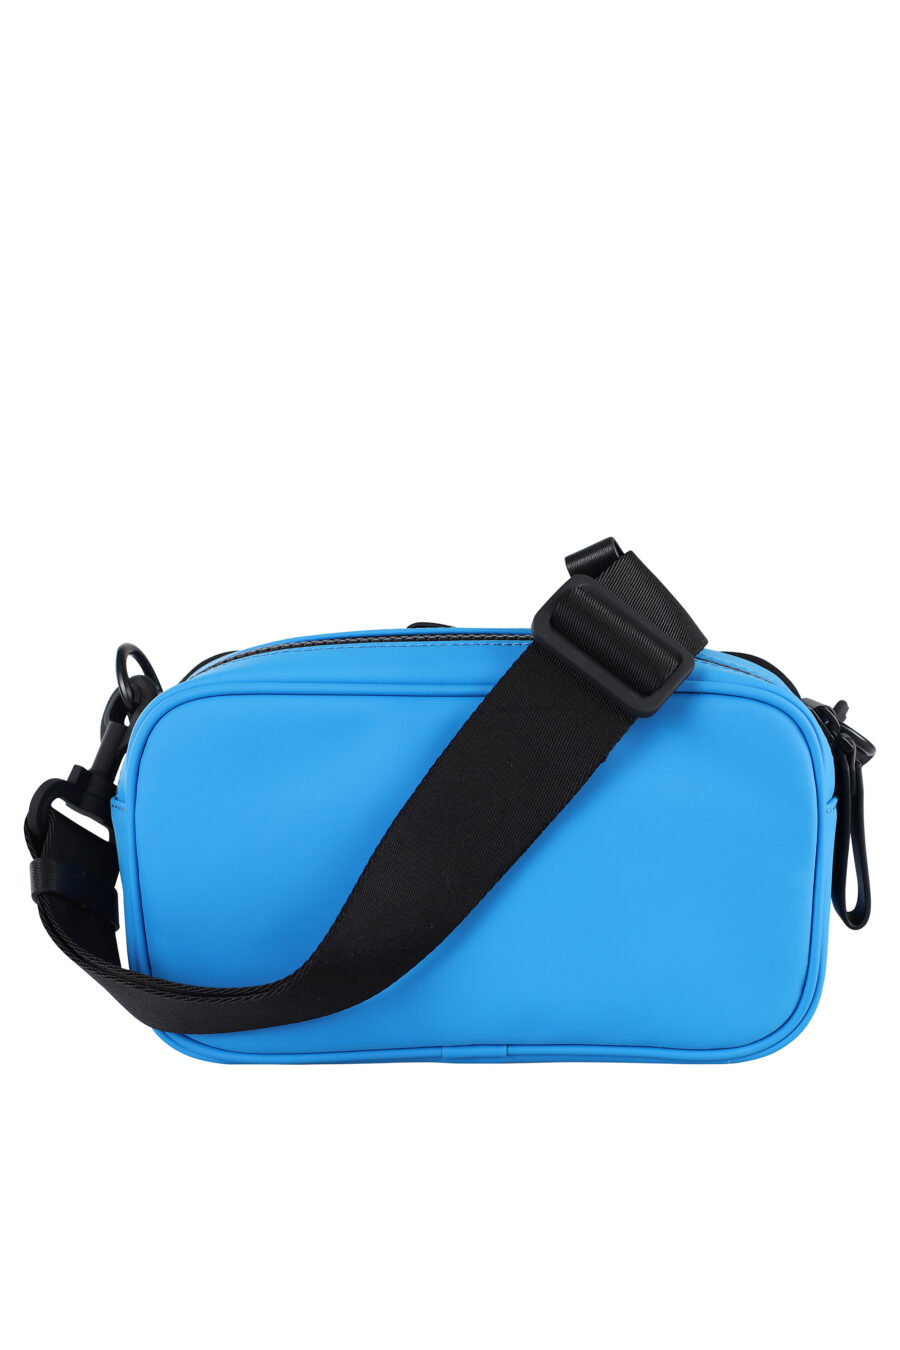 Mini blue shoulder bag with logo - IMG 7000